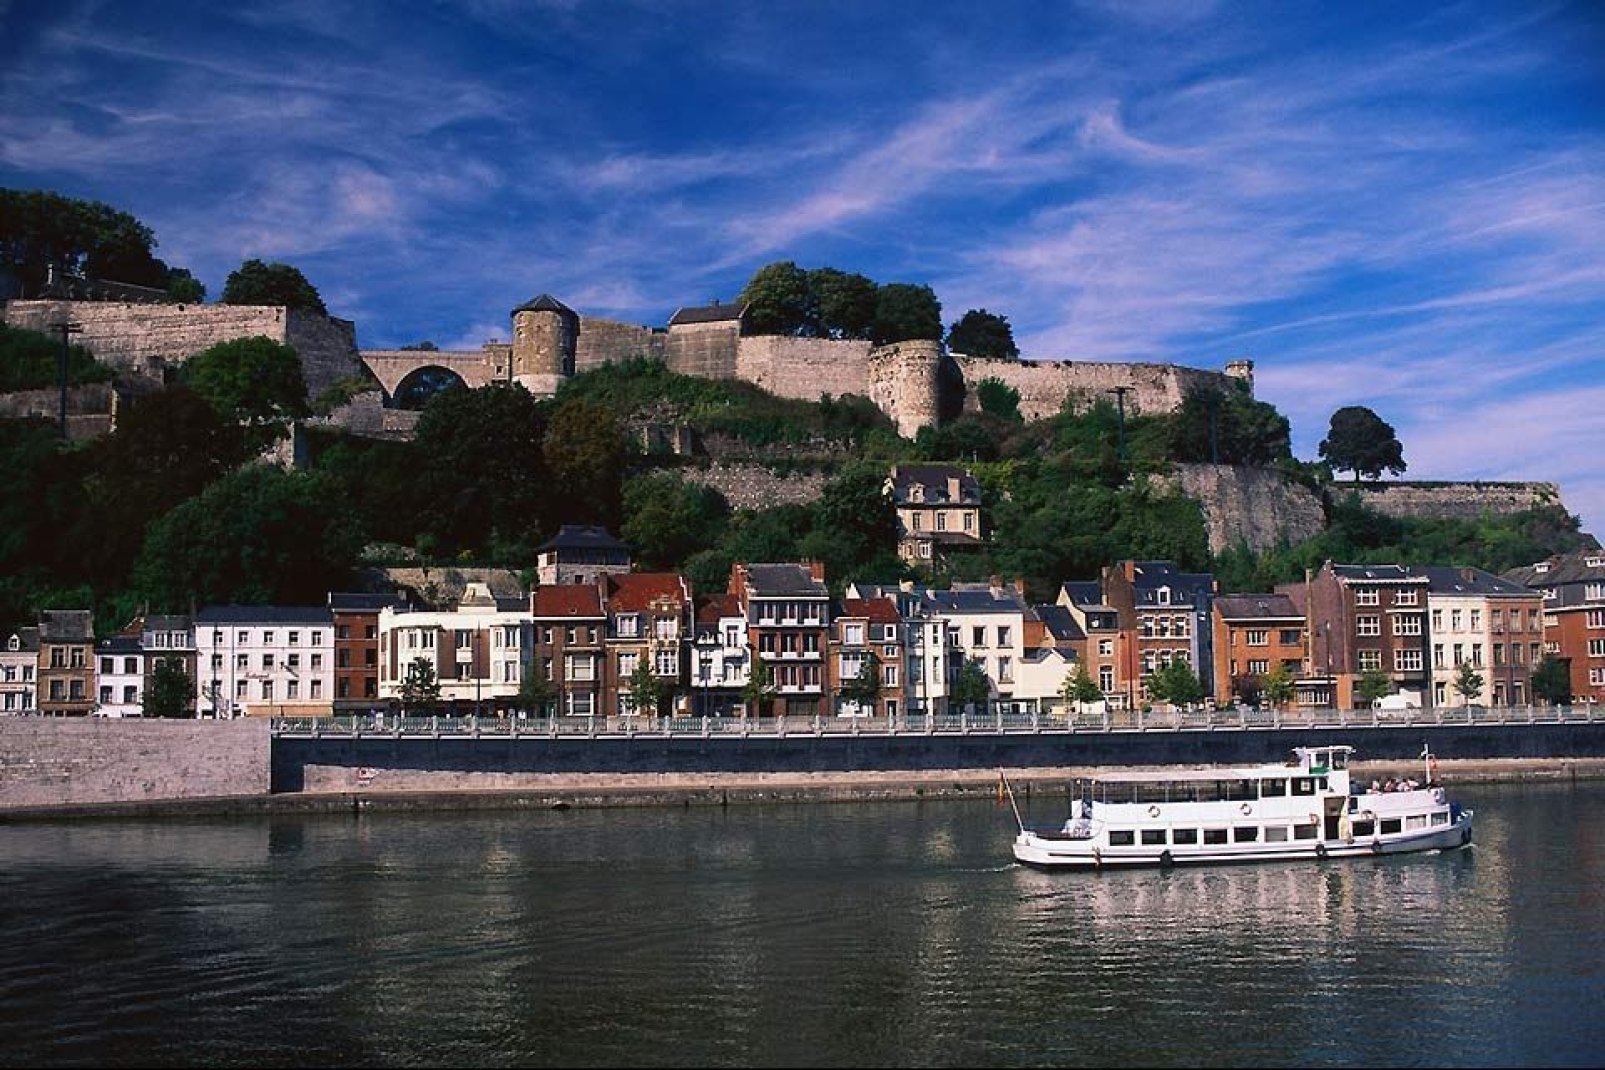 E' possibile effettuare delle crociere sulle famose "golodrinas" partendo da Namur.